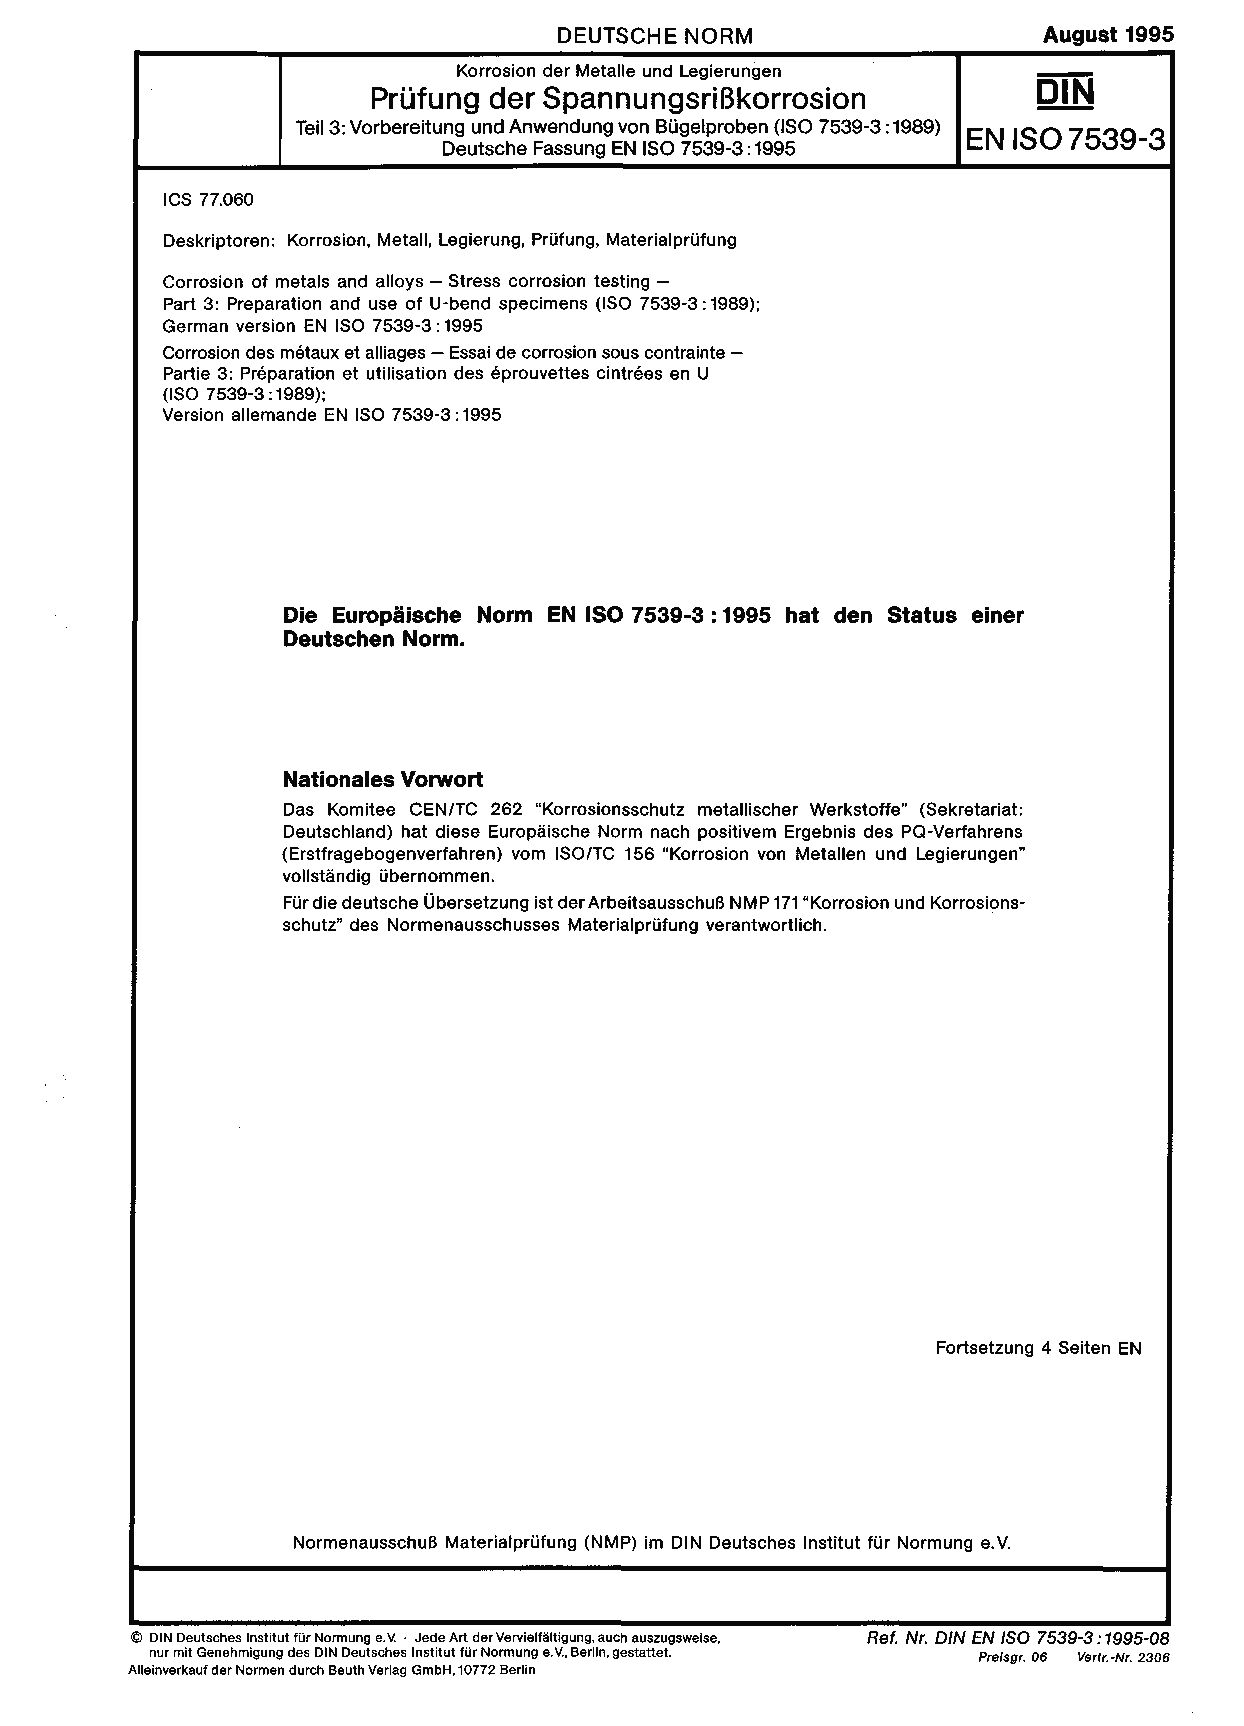 DIN EN ISO 7539-3:1995封面图